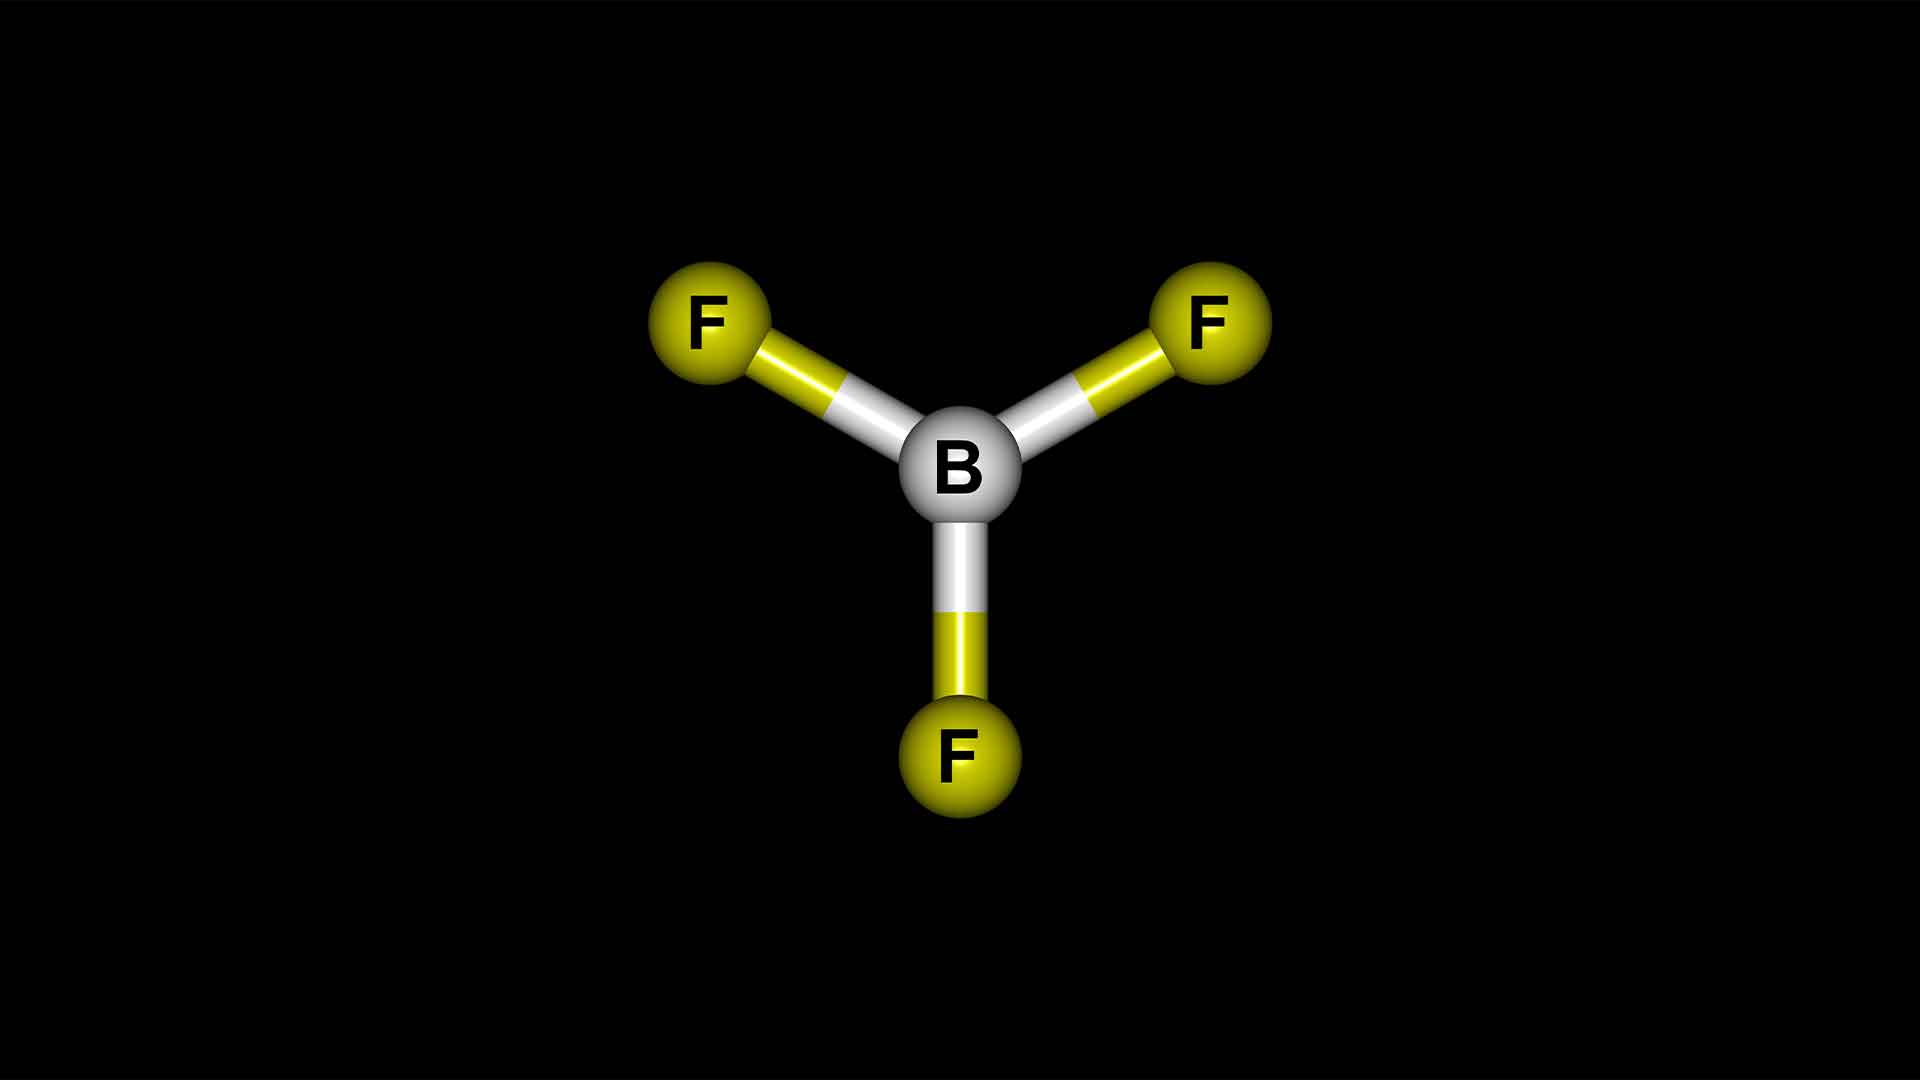 Boron Trifluoride